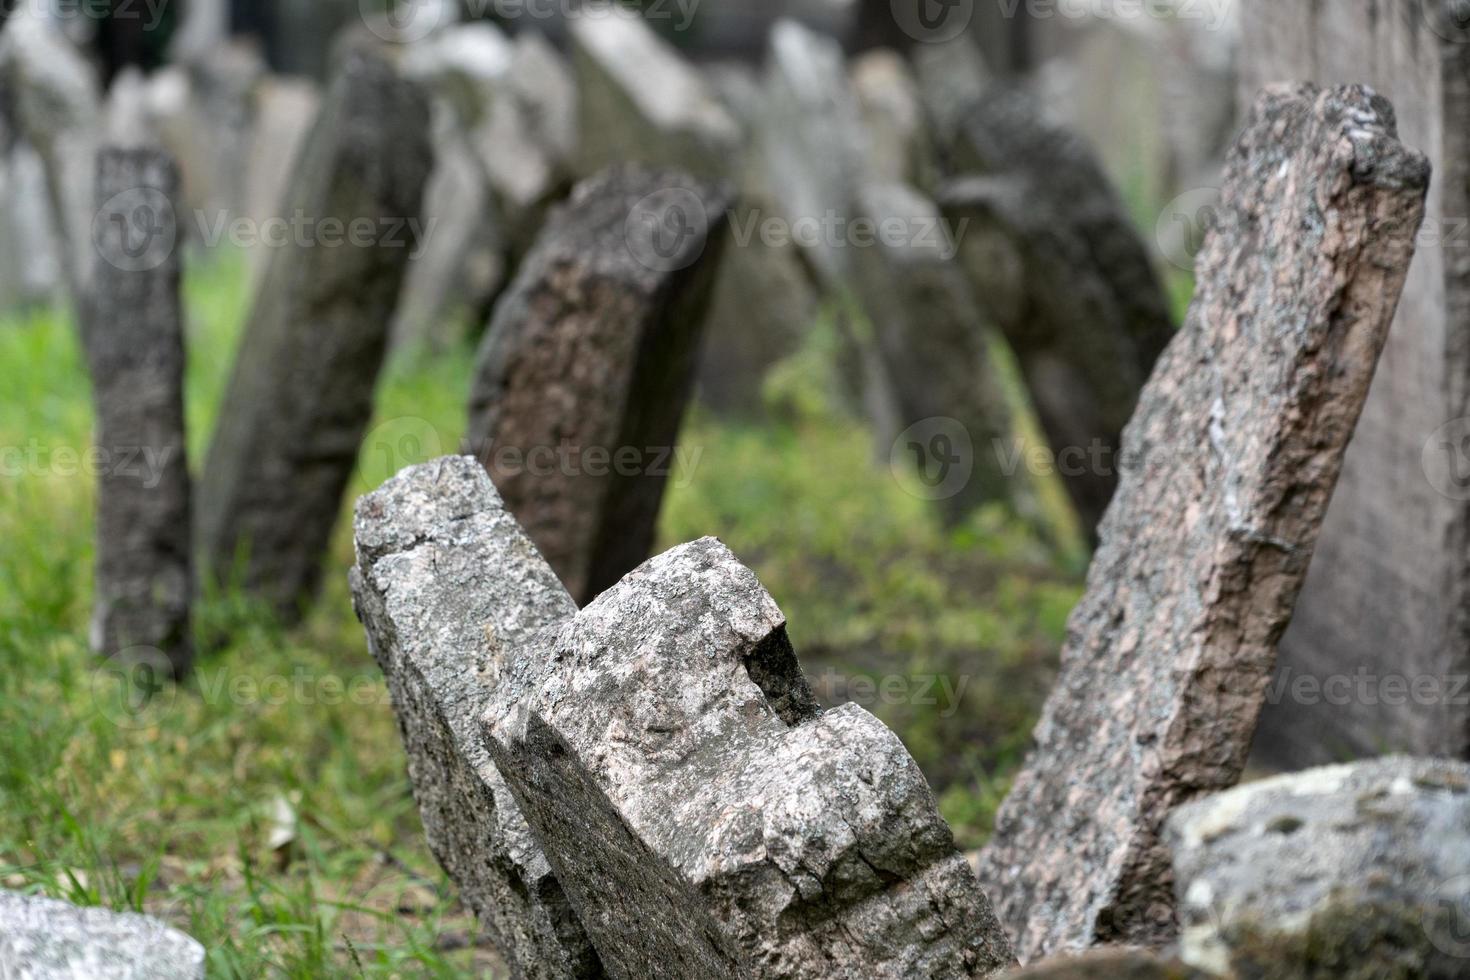 ancien cimetière juif de prague photo